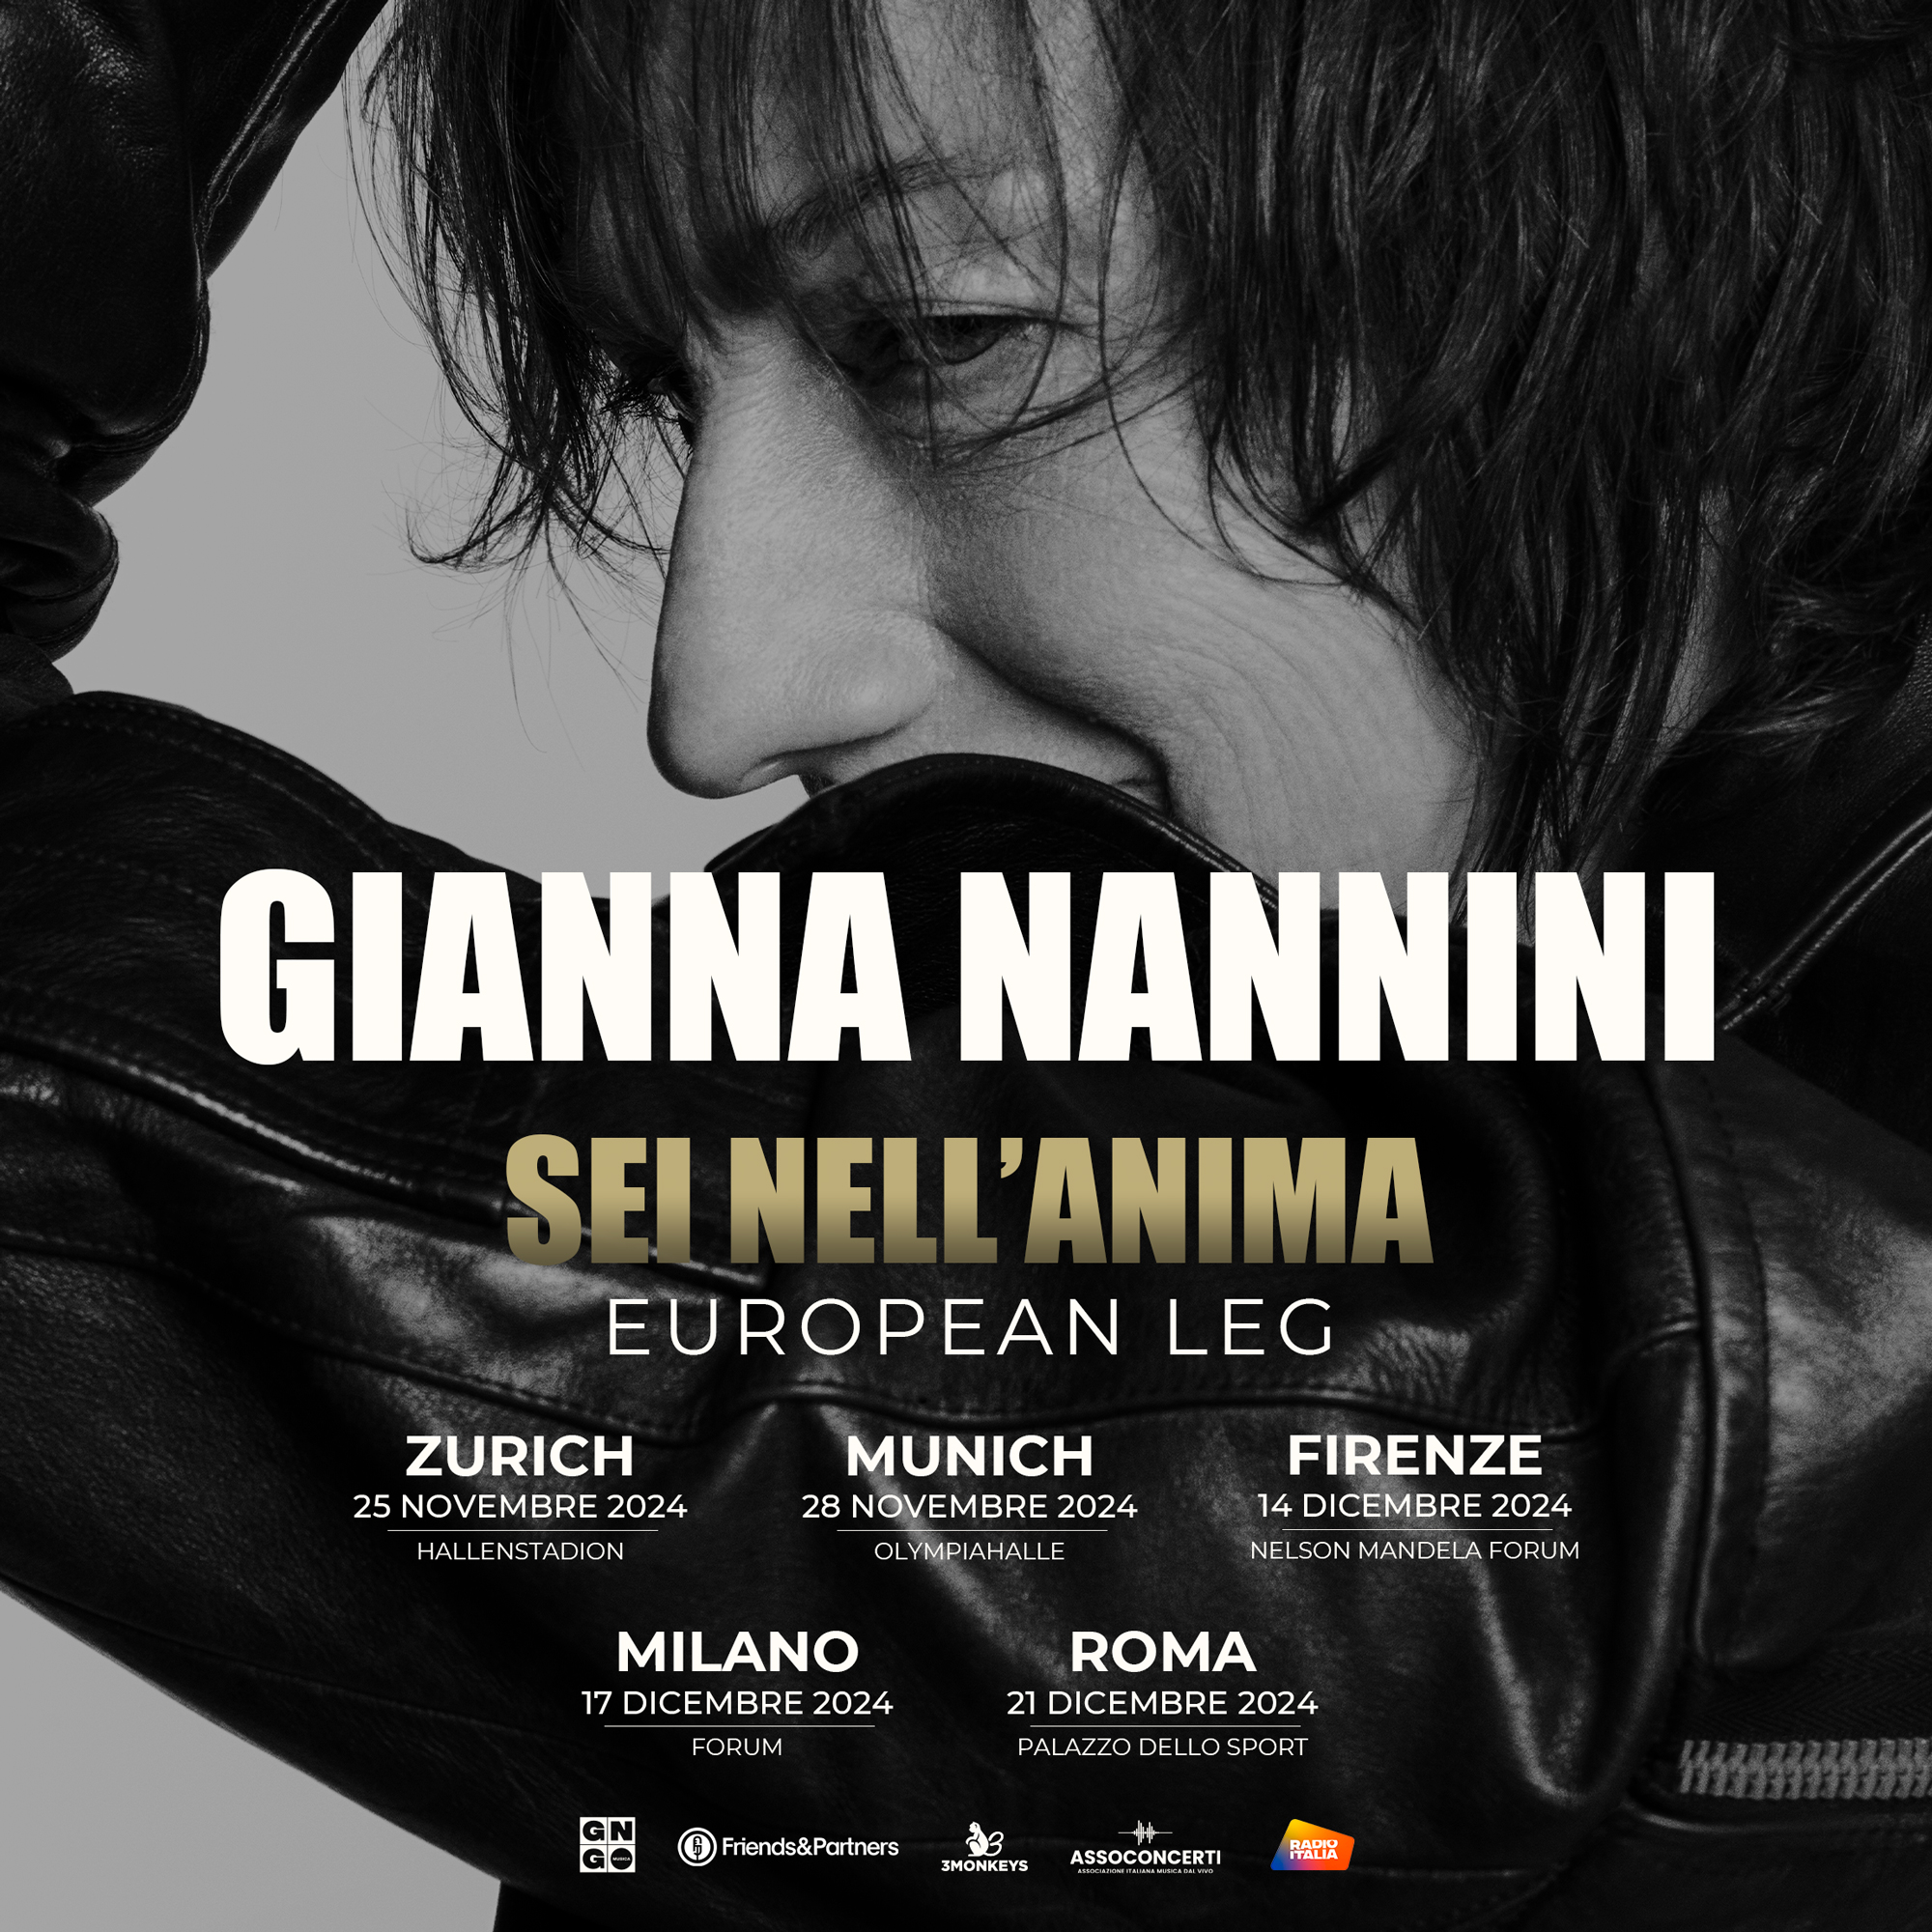 Gianna Nannini - Sei Nell'anima en Jahrhunderthalle Tickets